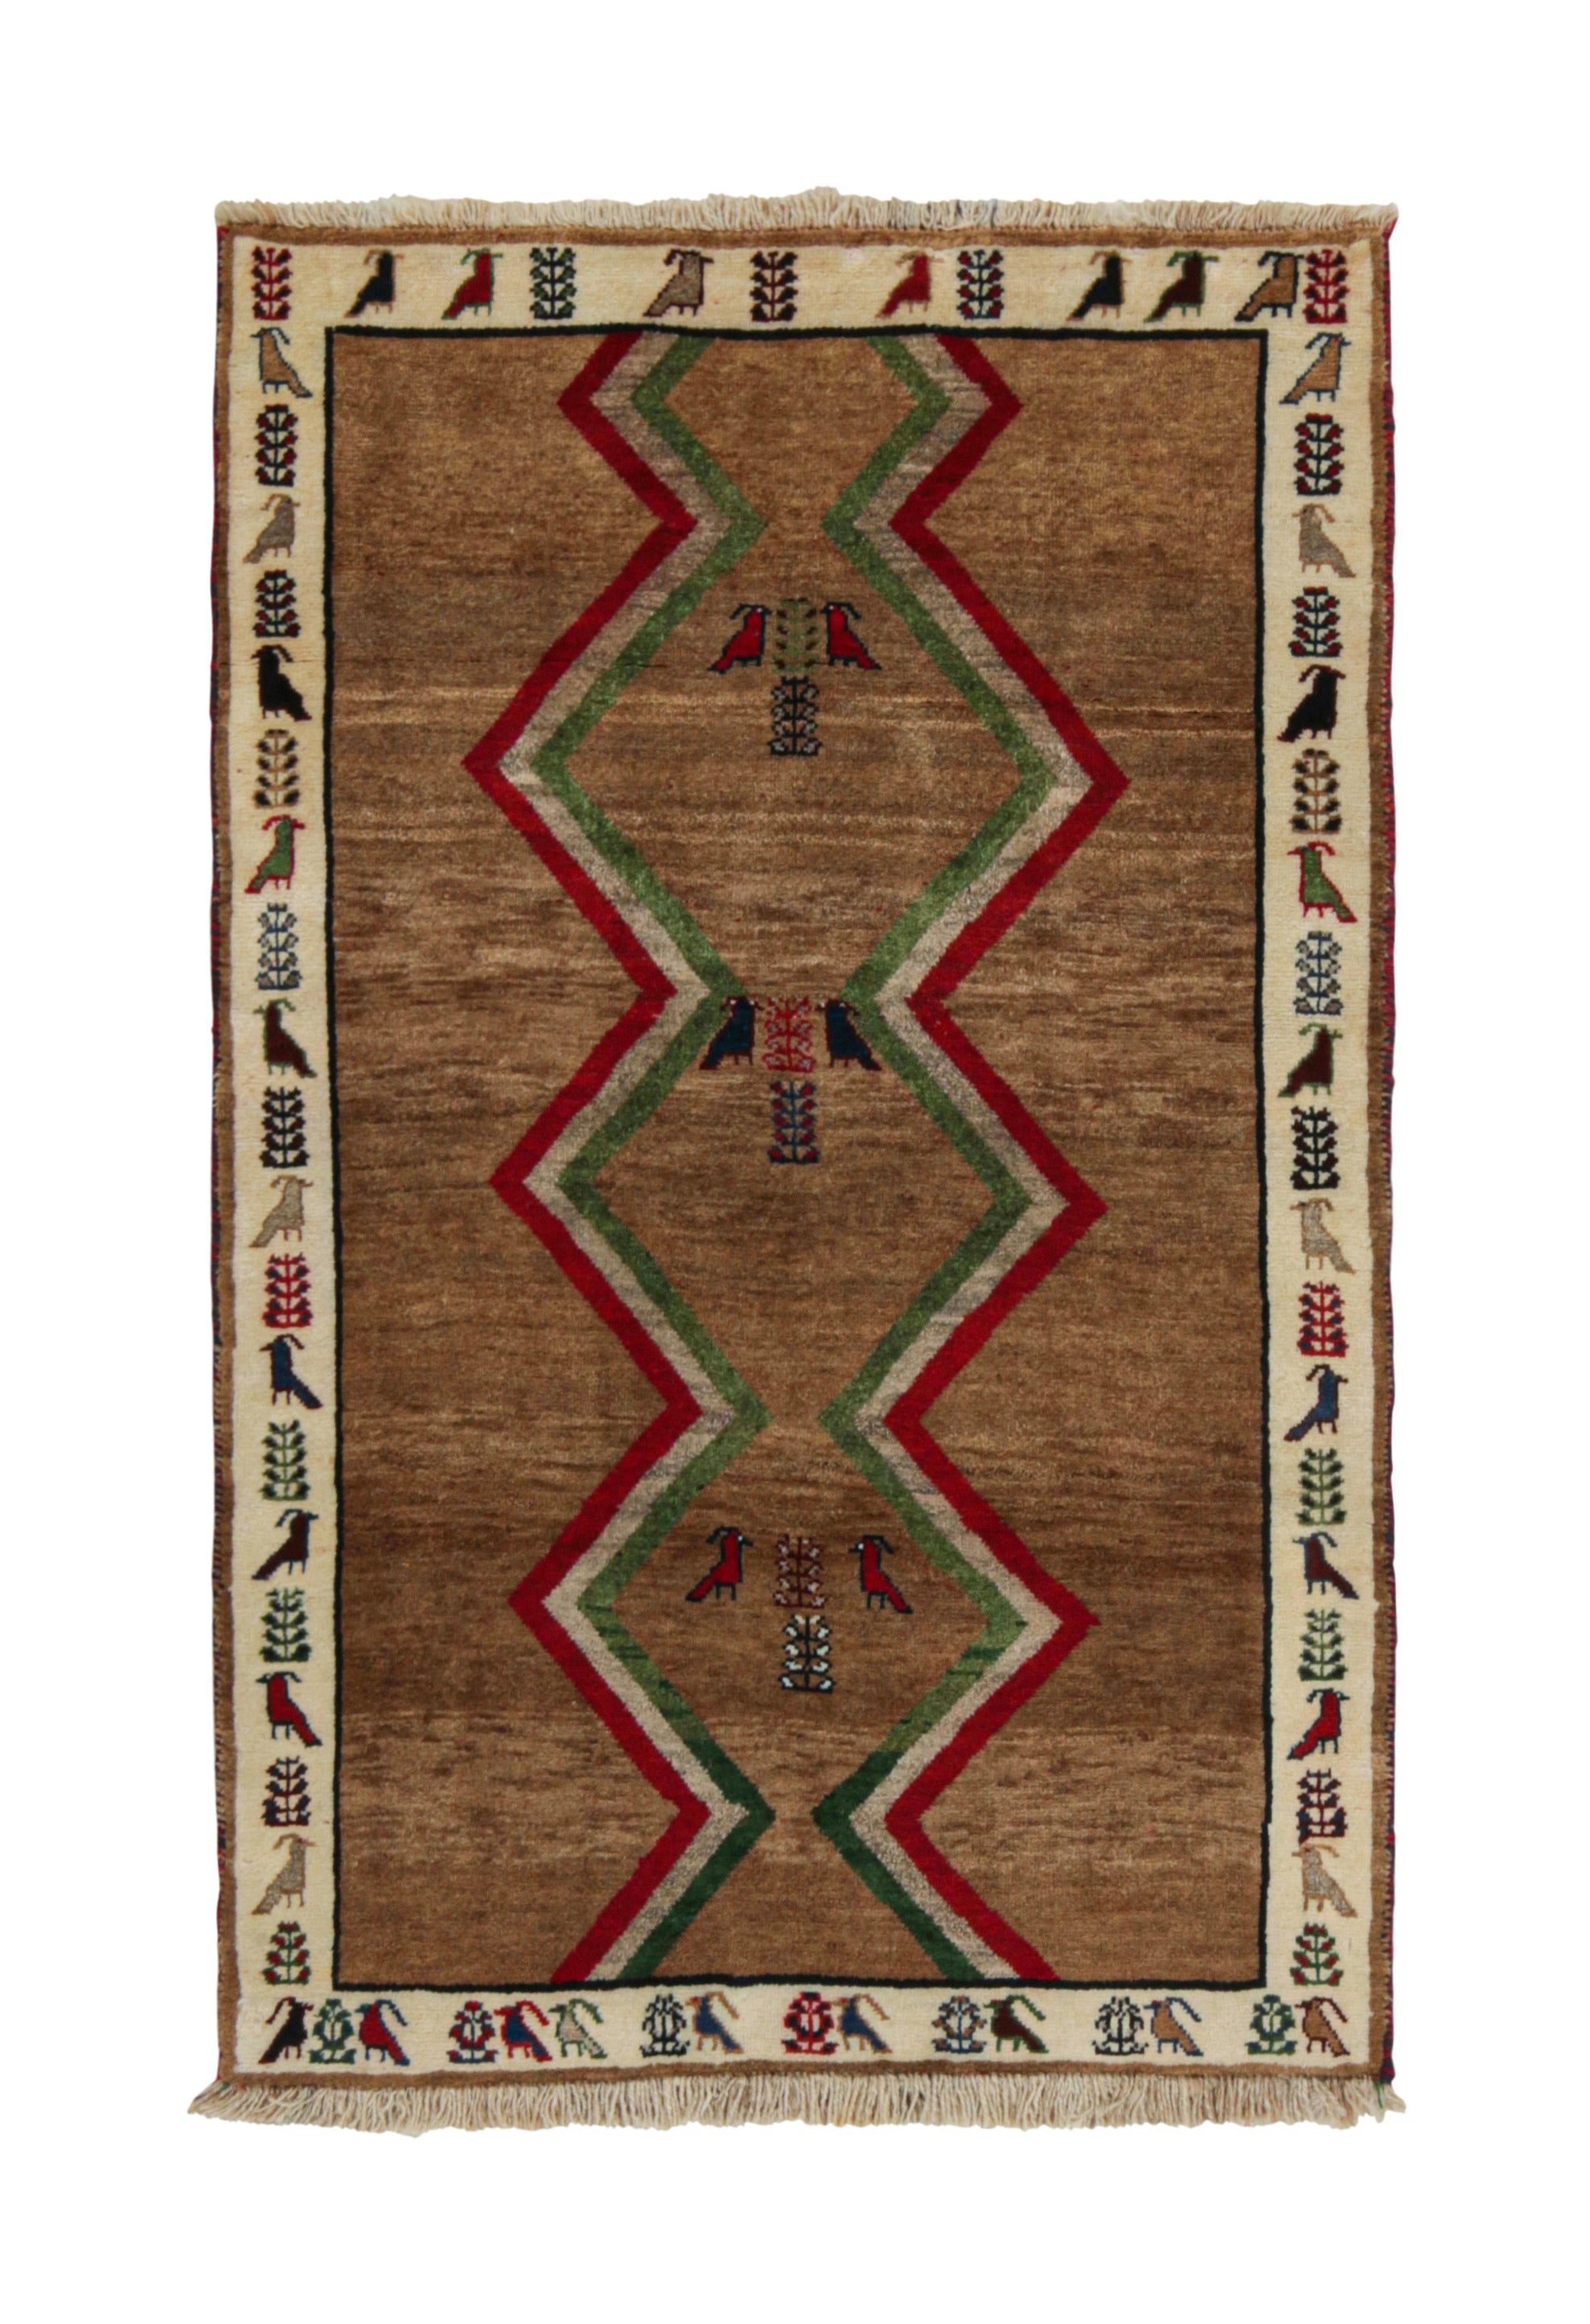 Gabbeh Tribal Teppich im Vintage-Stil in Braun, Rot & Grün mit geometrischem Muster von Teppich & Kelim